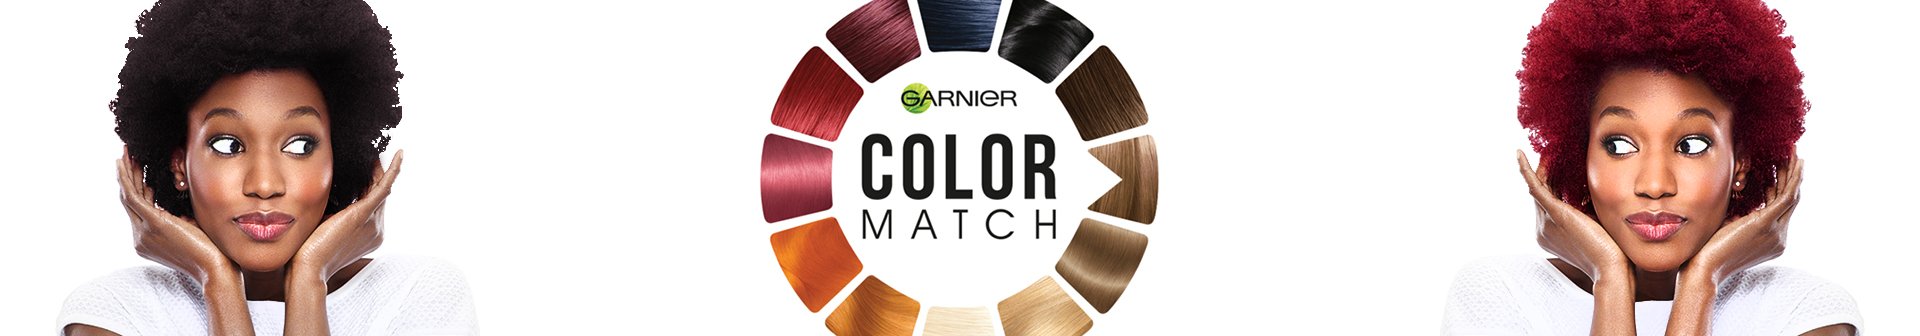 Color match